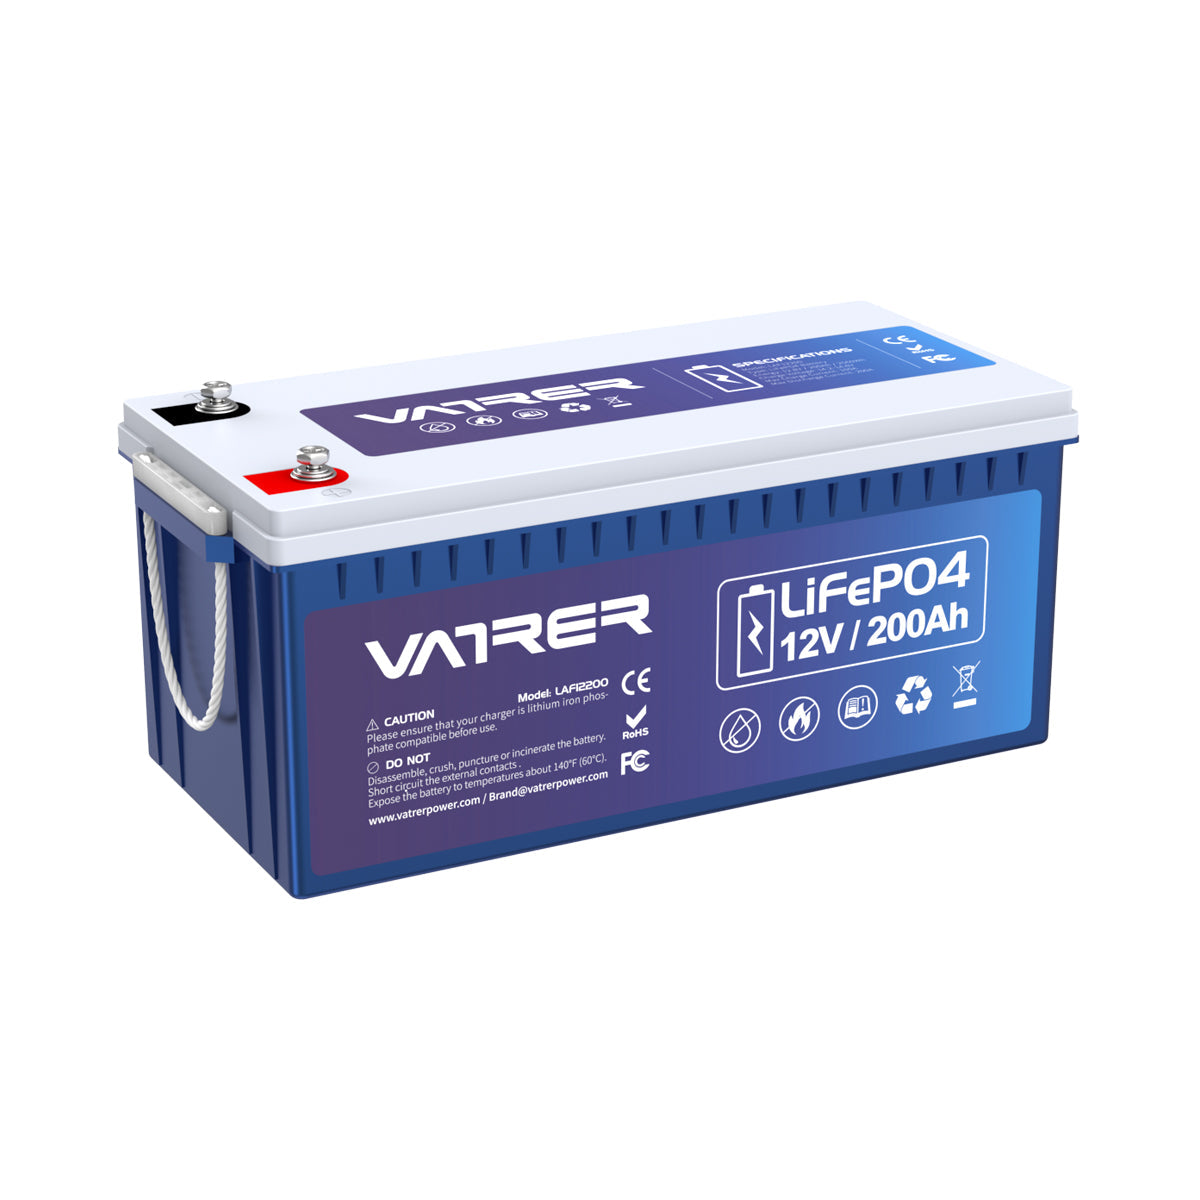 12V 200Ah más batería de litio LiFePO4, 200A BMS incorporado y corte de baja temperatura 9